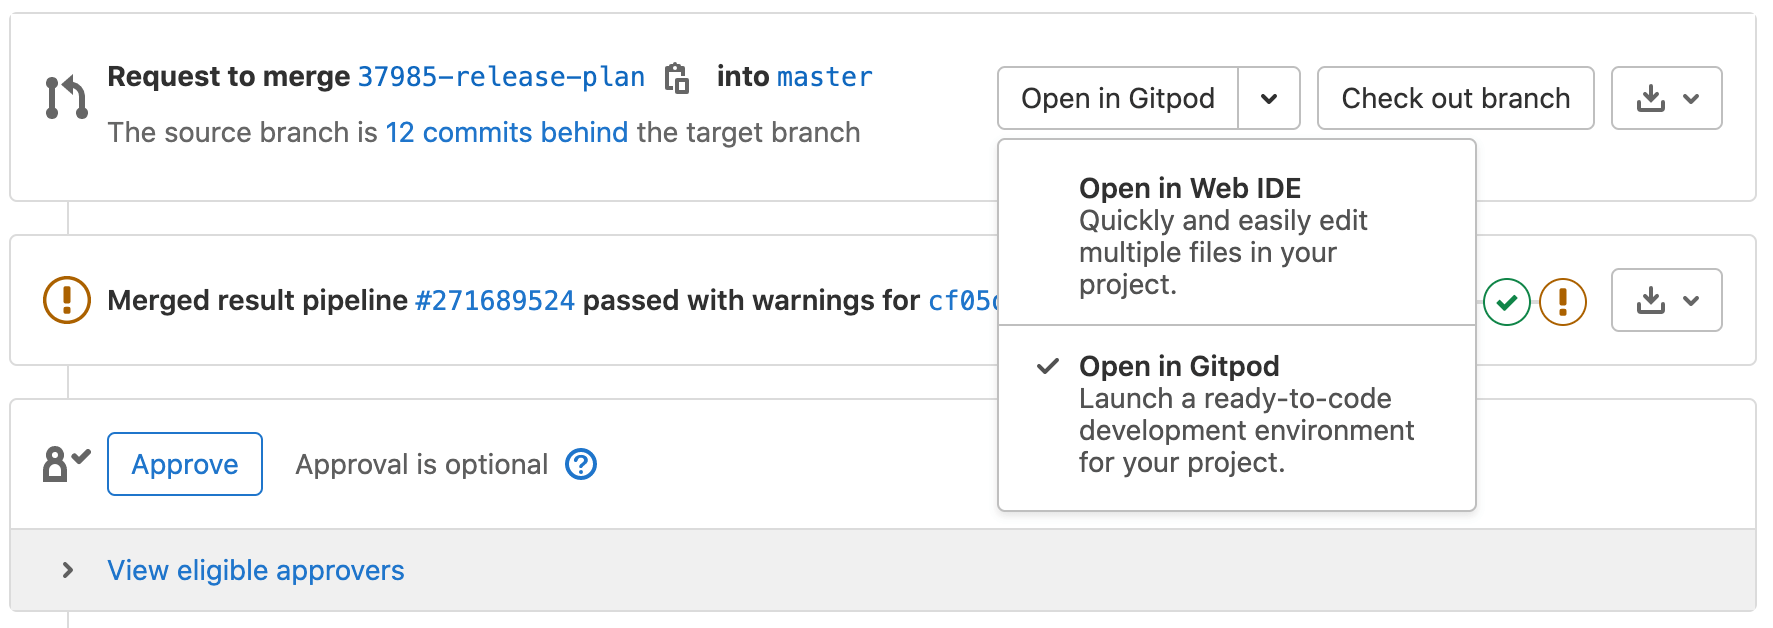 从合并请求中启动预配置的 Gitpod 工作空间